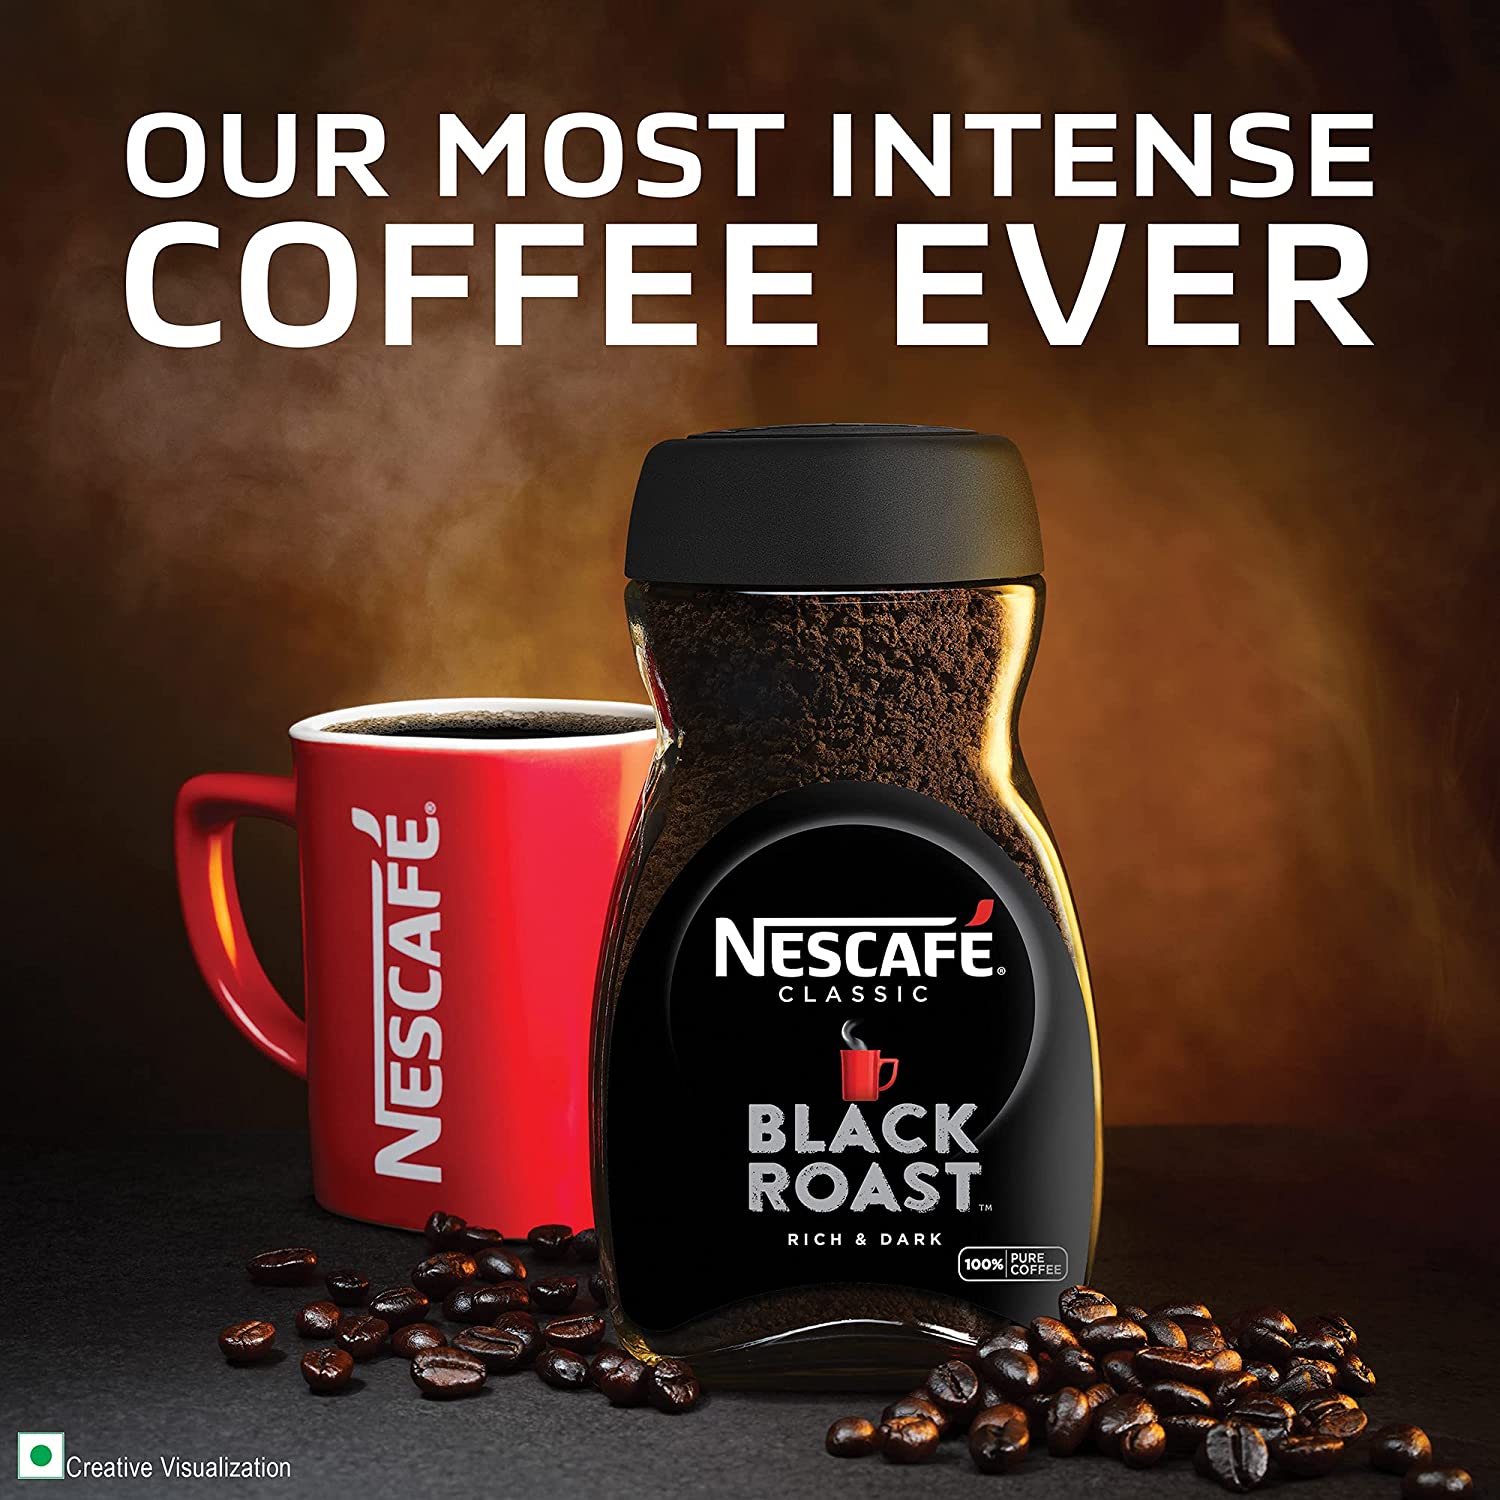 Instant Coffee - Nescafé Clasico